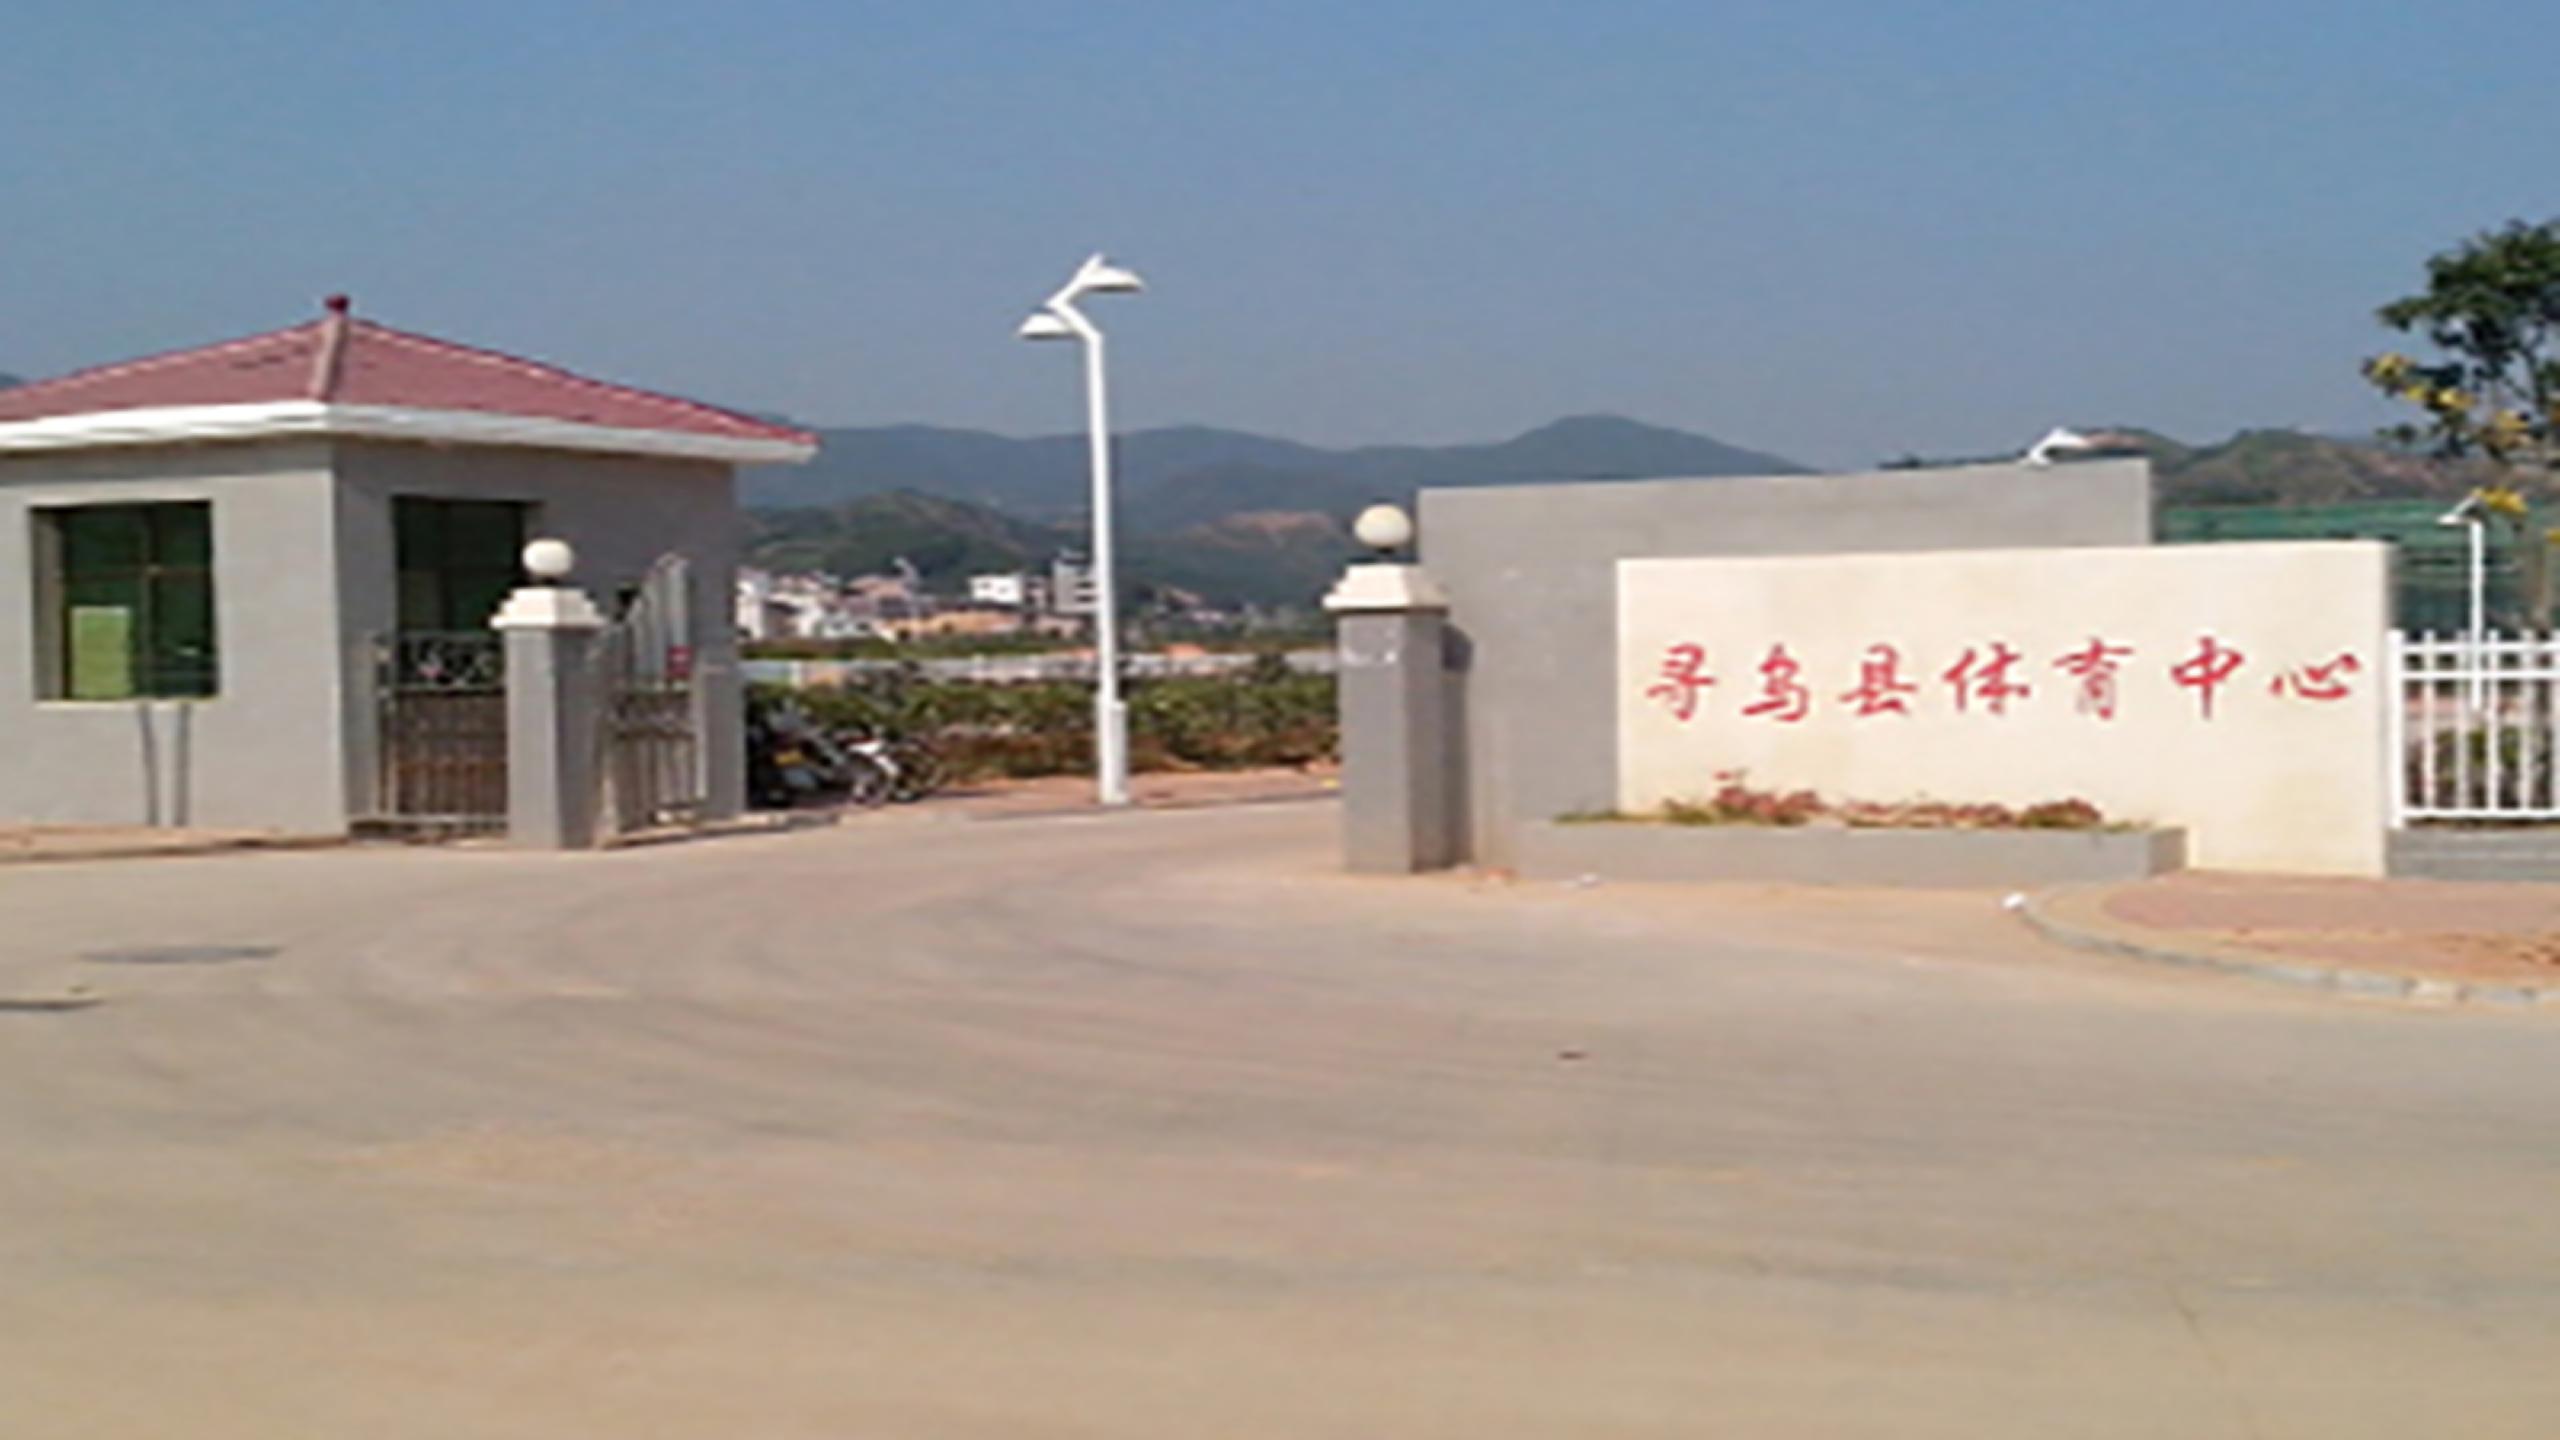 Sports center of Xunwu county, Jiangxi province